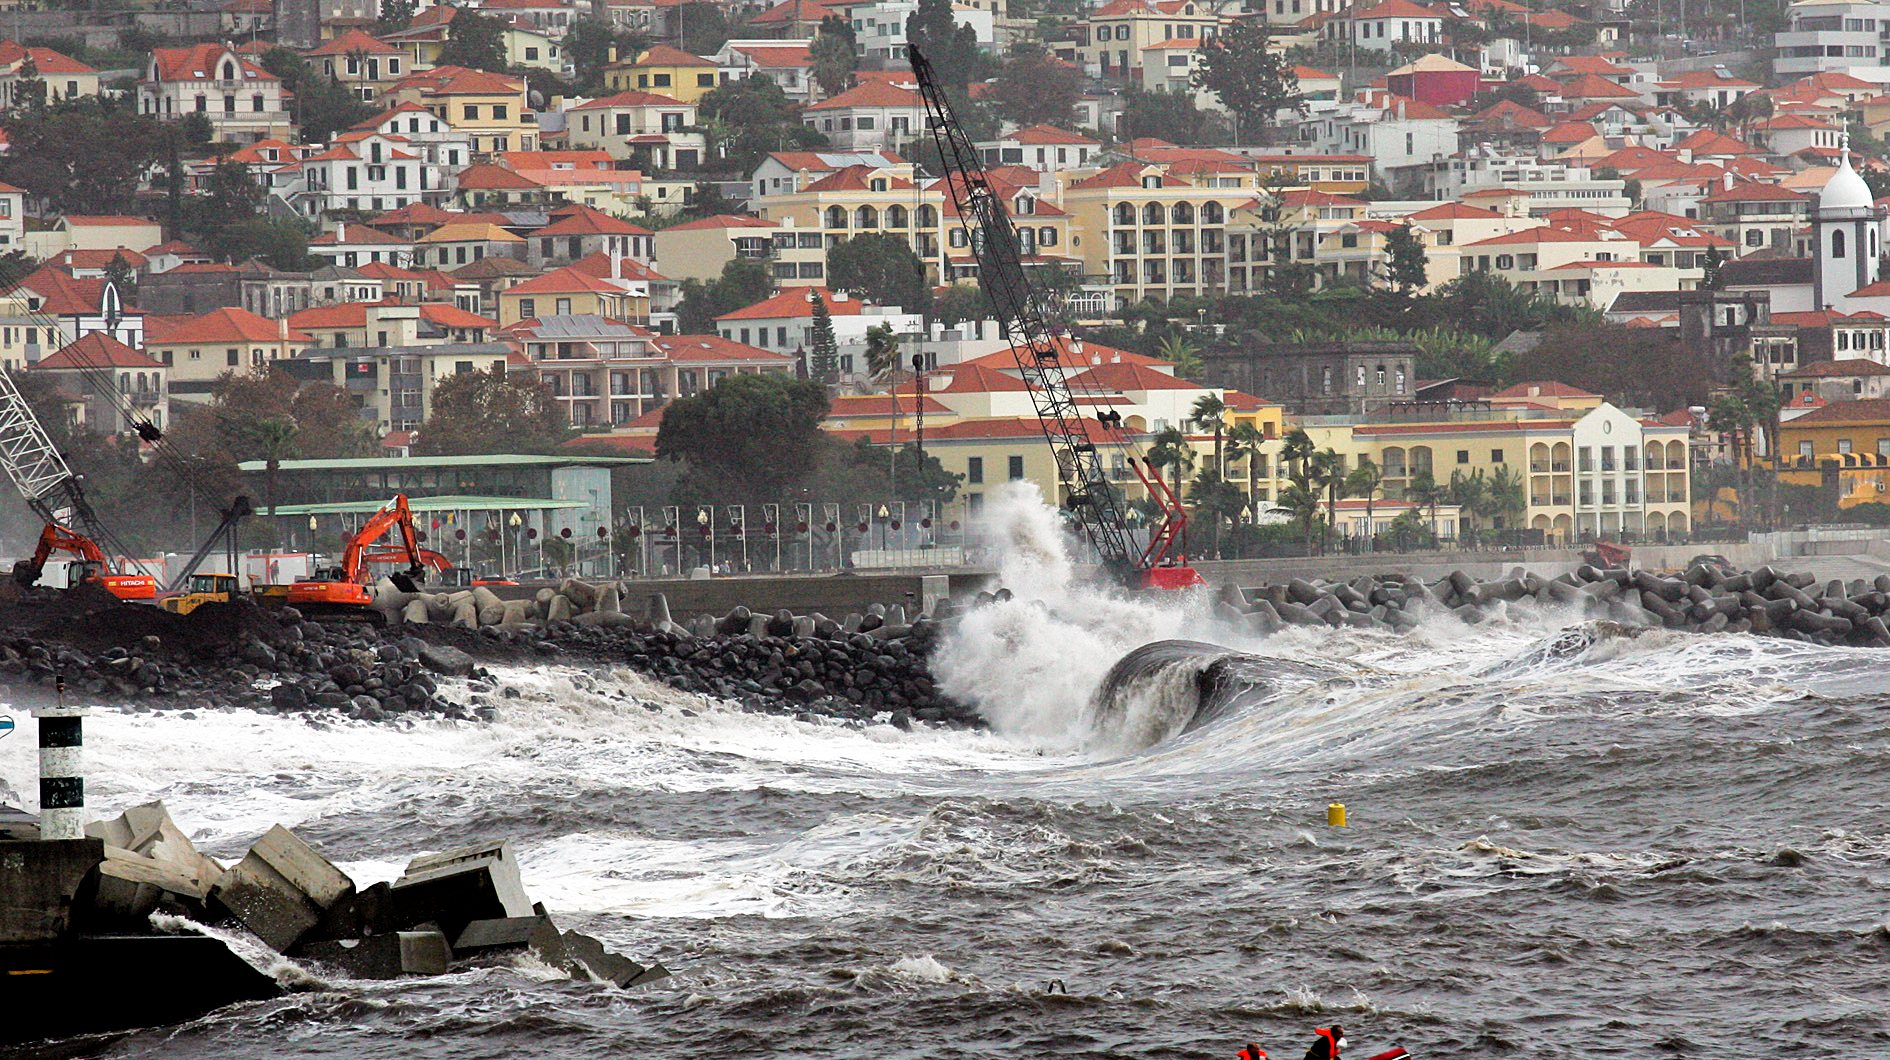 Os avisos têm por base a informação recebida do Instituto Português do Mar e da Atmosfera (IPMA) sobre o estado do tempo